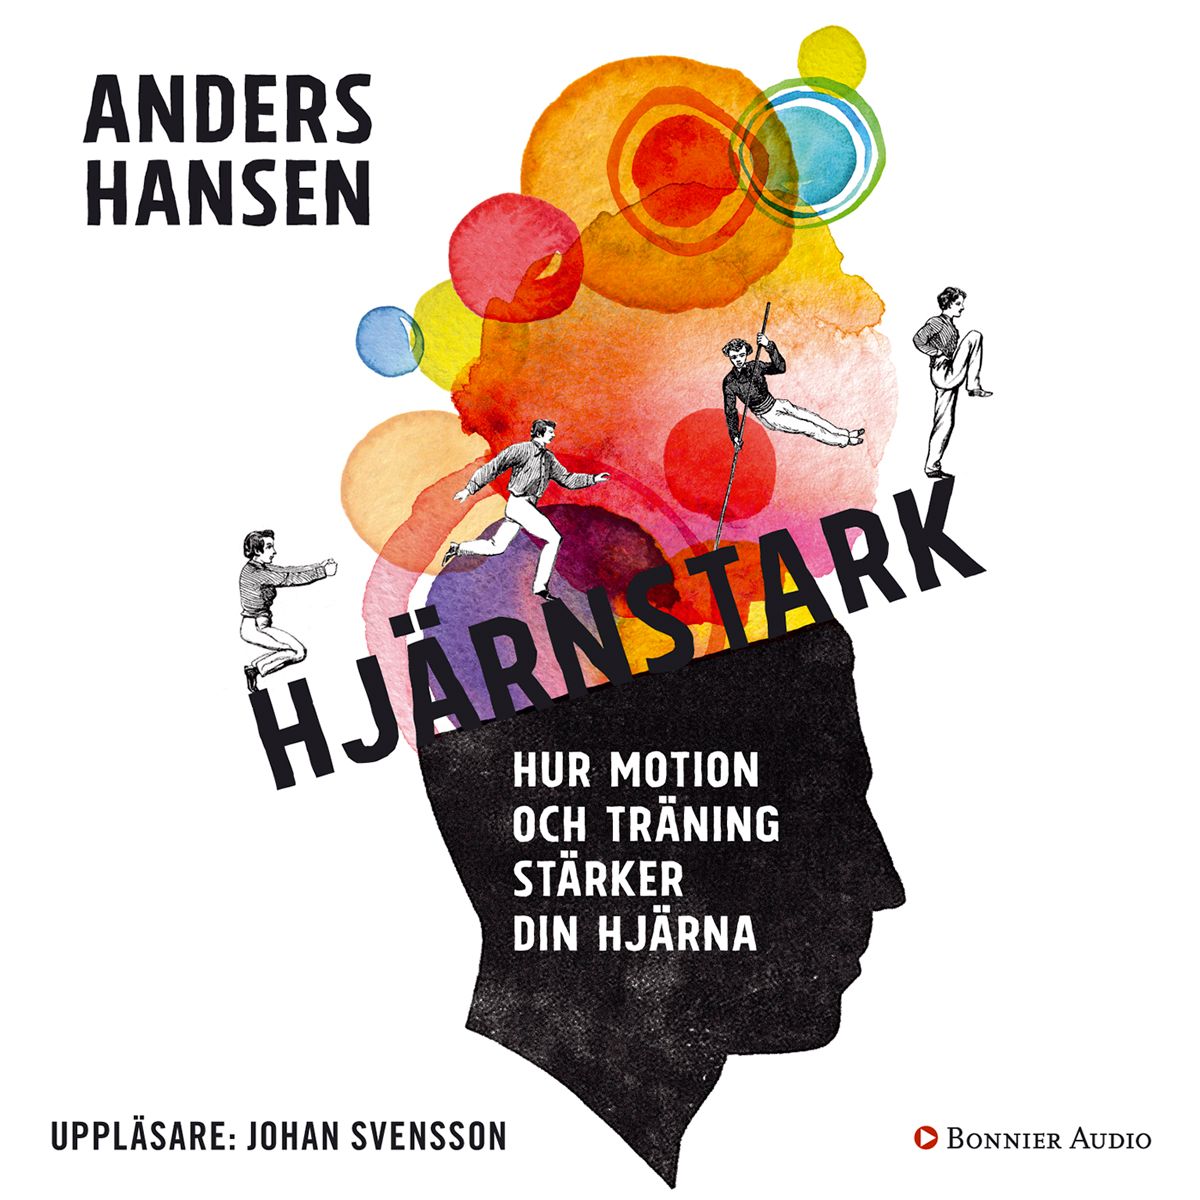 Hjärnstark : Hur motion och träning stärker din hjärna, audiobook by Anders Hansen